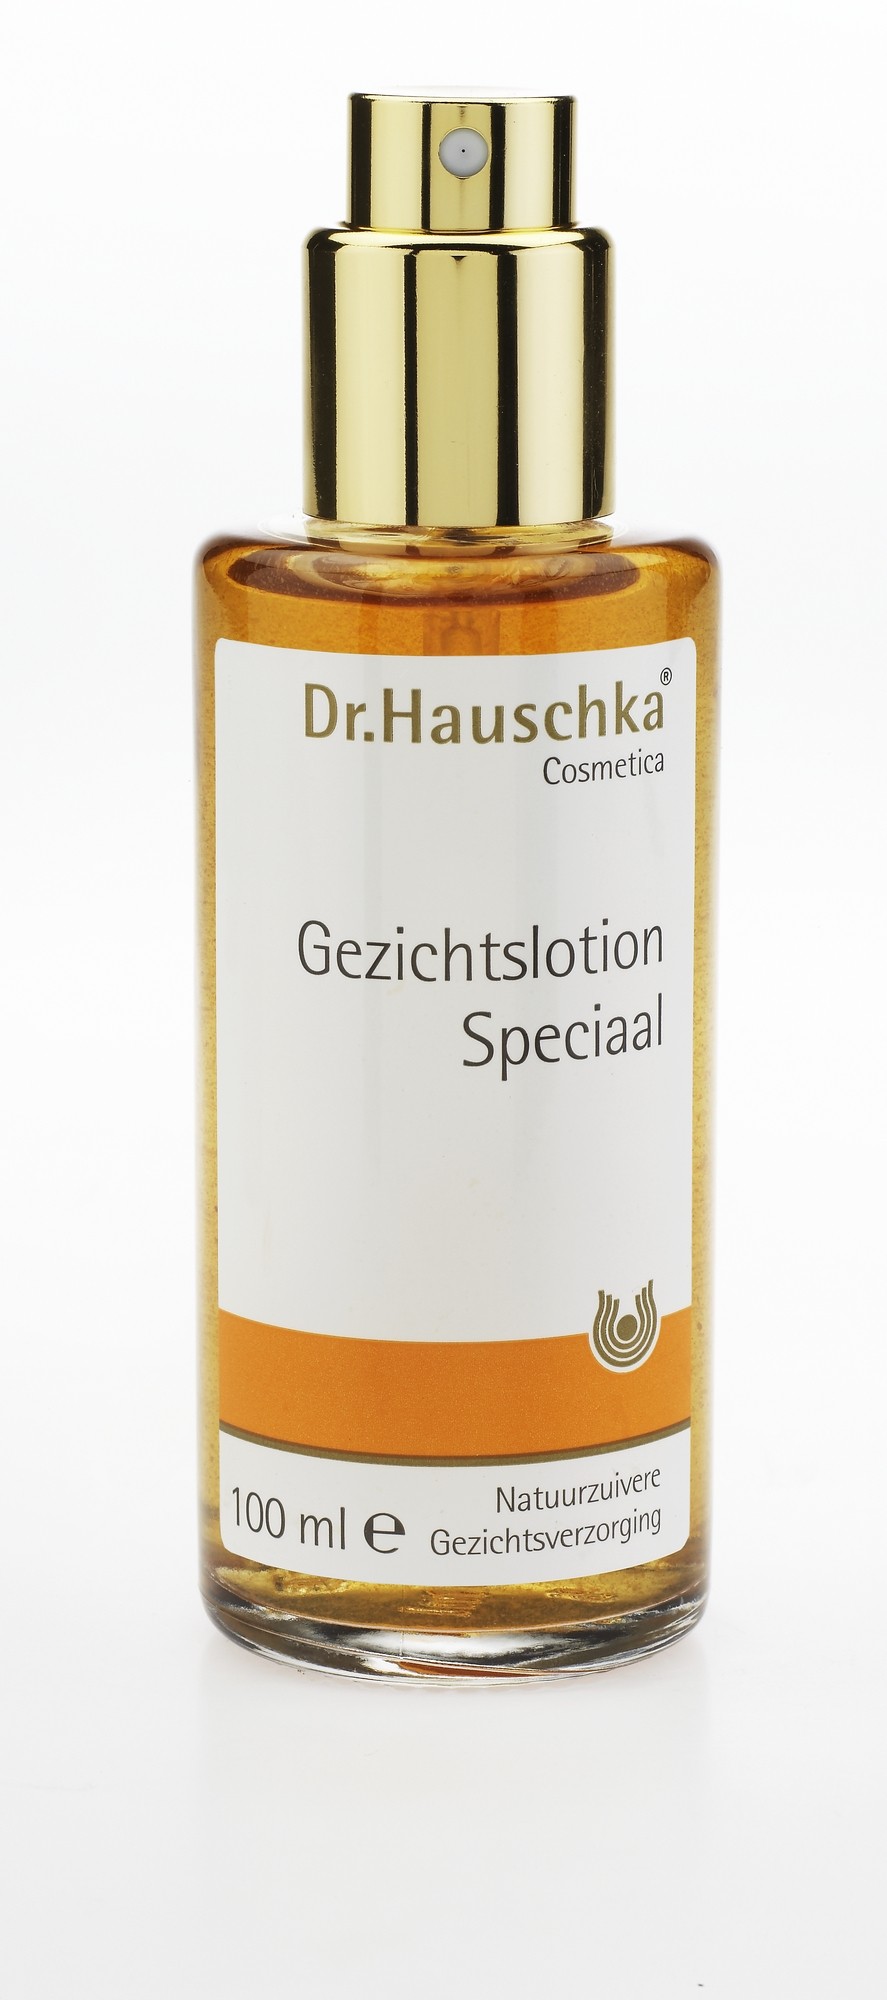 Dr.Hauschka Gezichtslotion Speciaal 100ml